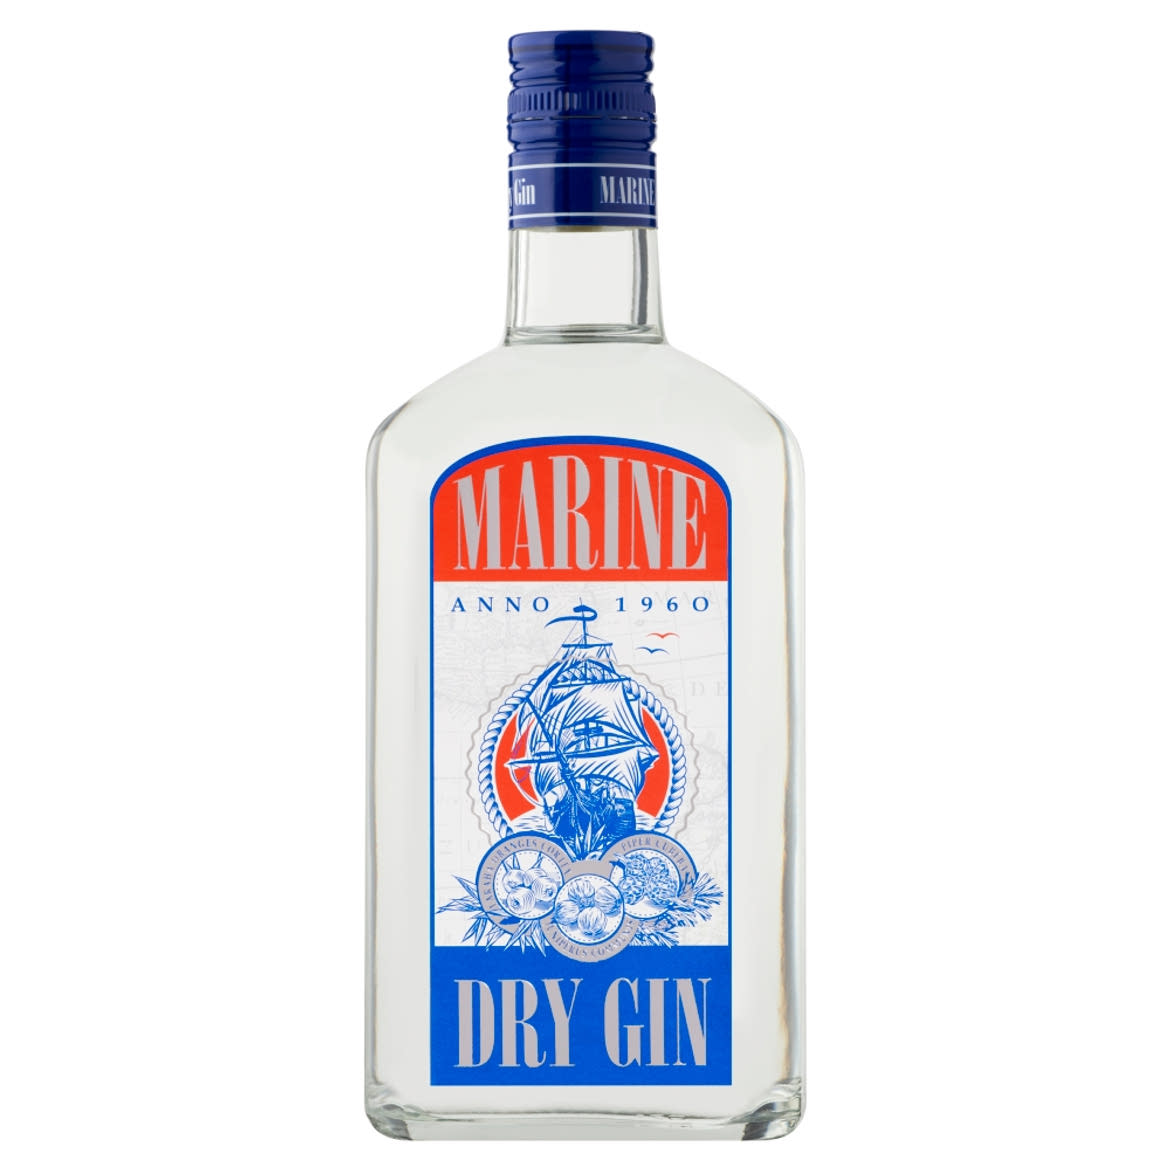 Marine Dry gin 37,5%